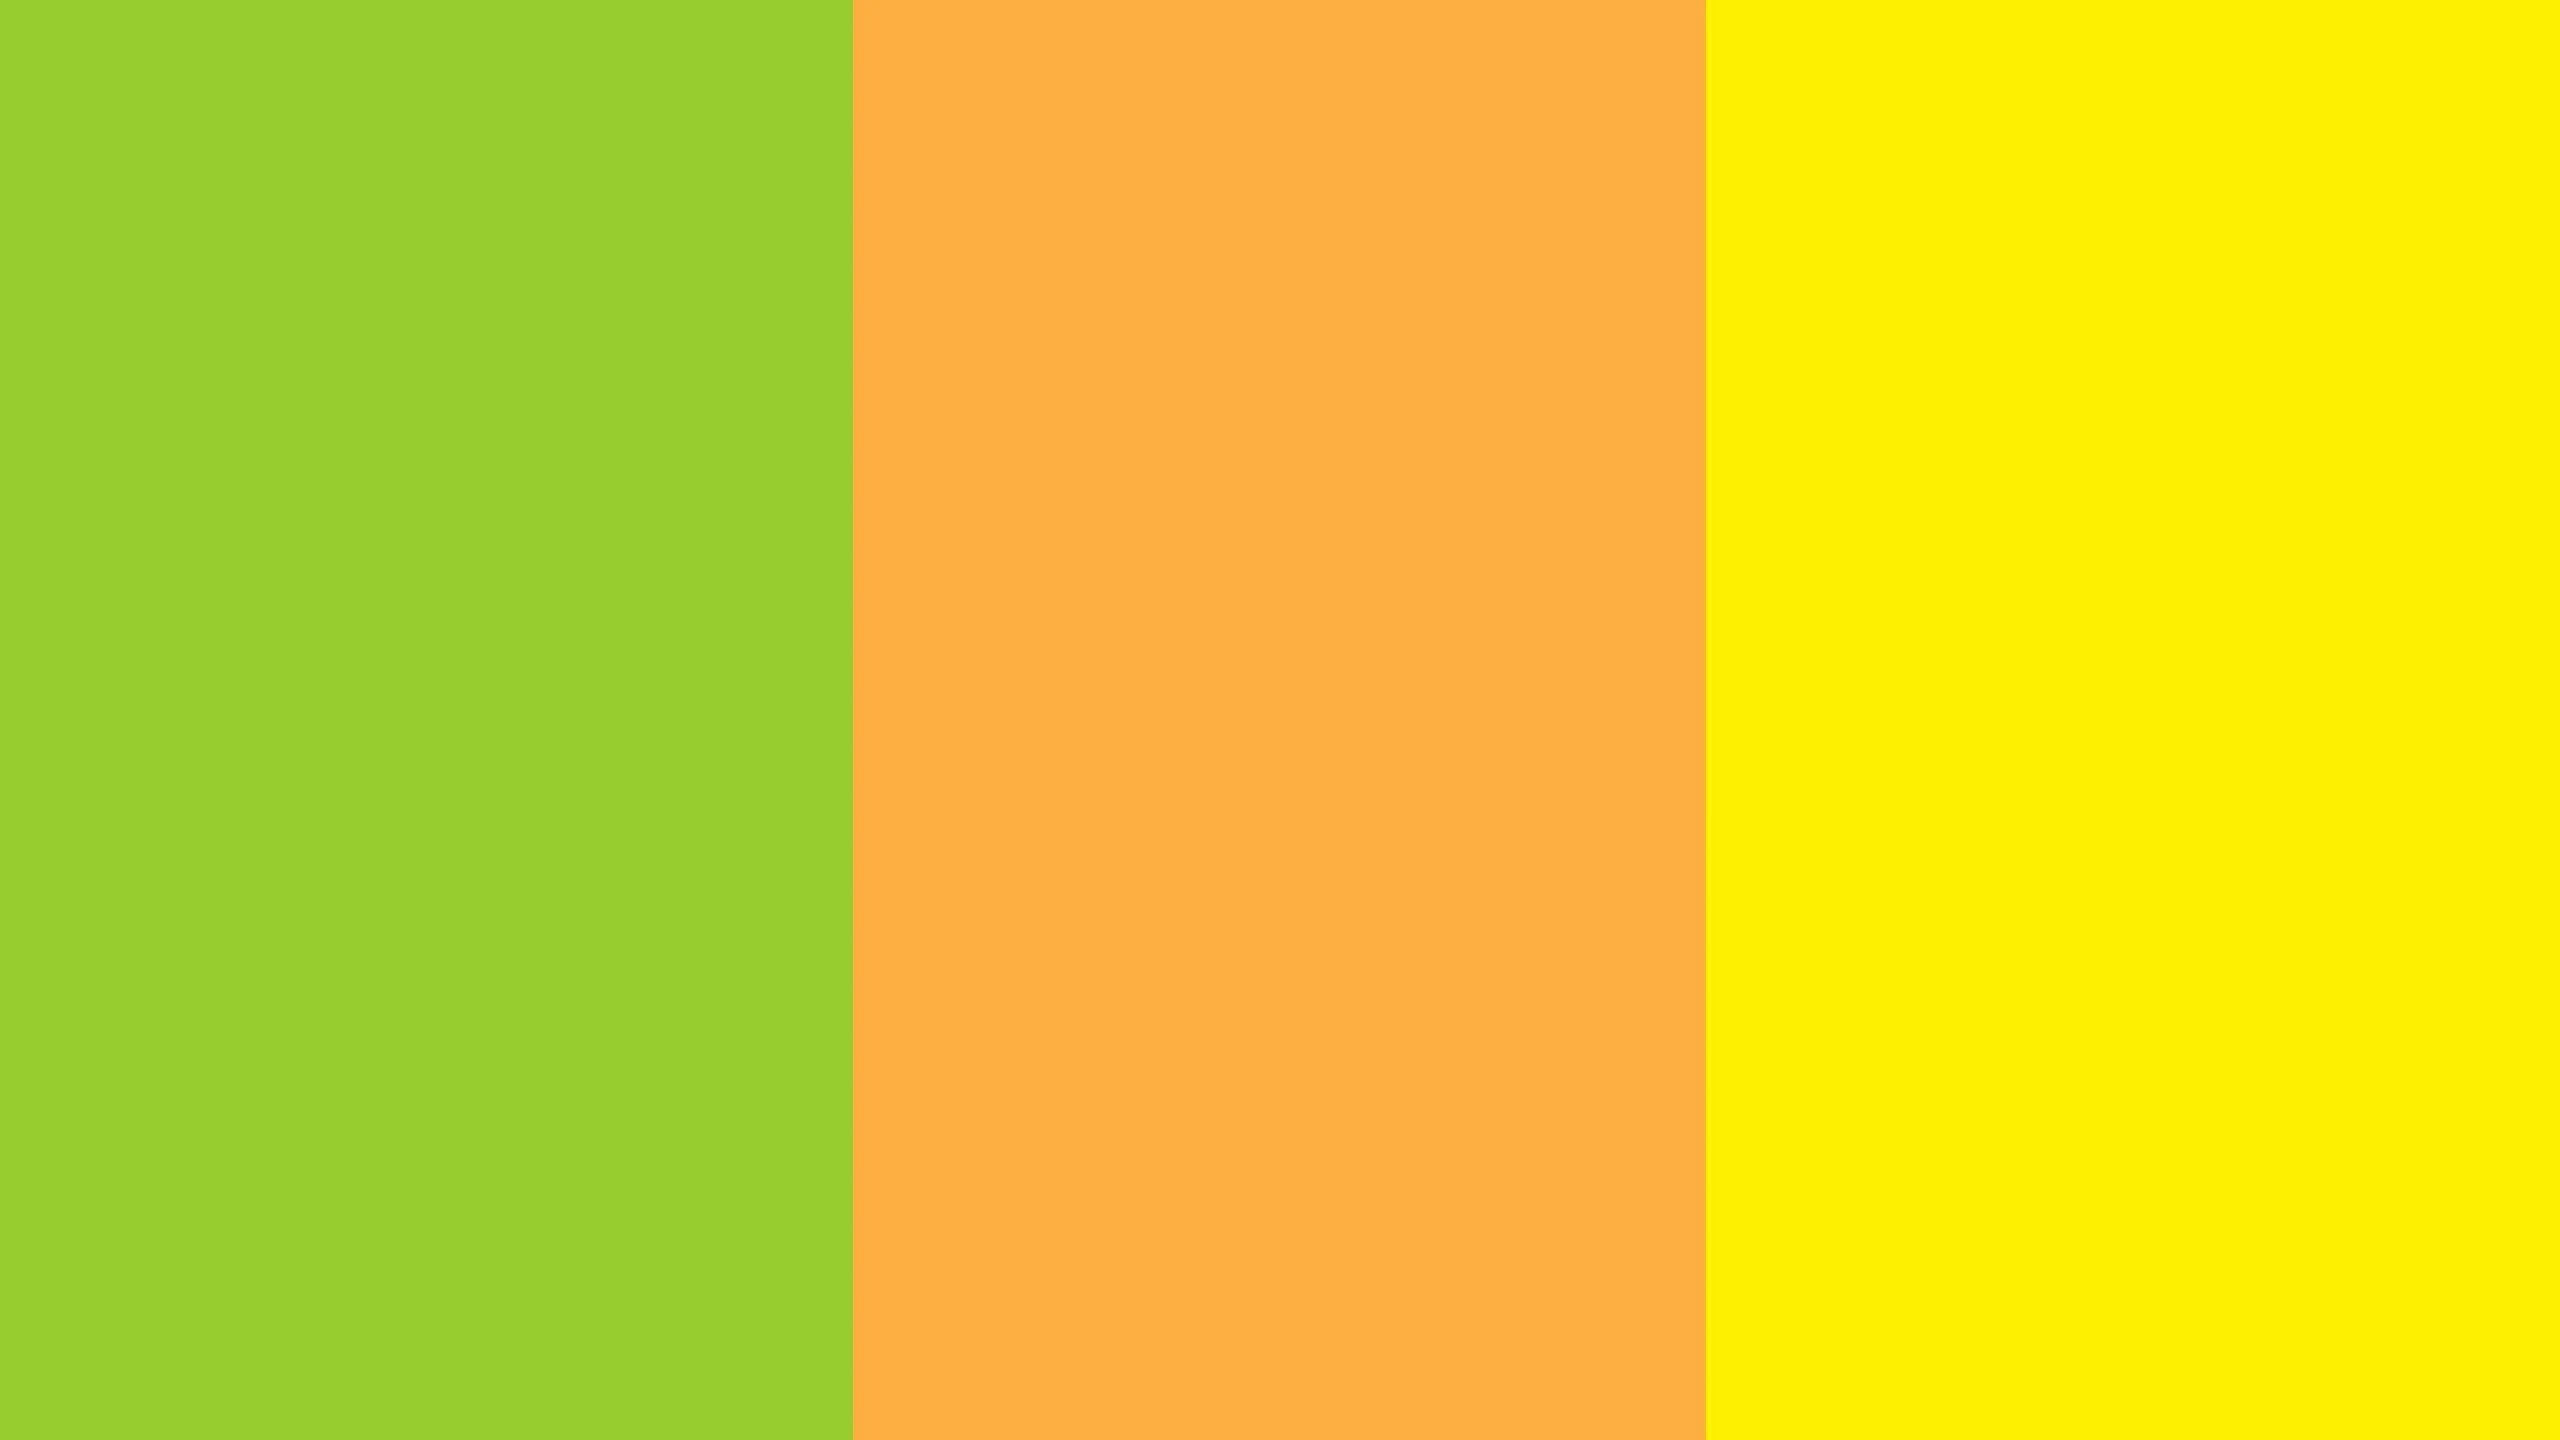 Желтоватый оттенок зеленого цвета. Желто-зеленый цвет. Оттенки желтого и зеленого. Желто-оранжевый цвет. Цветовая палитра желтый.